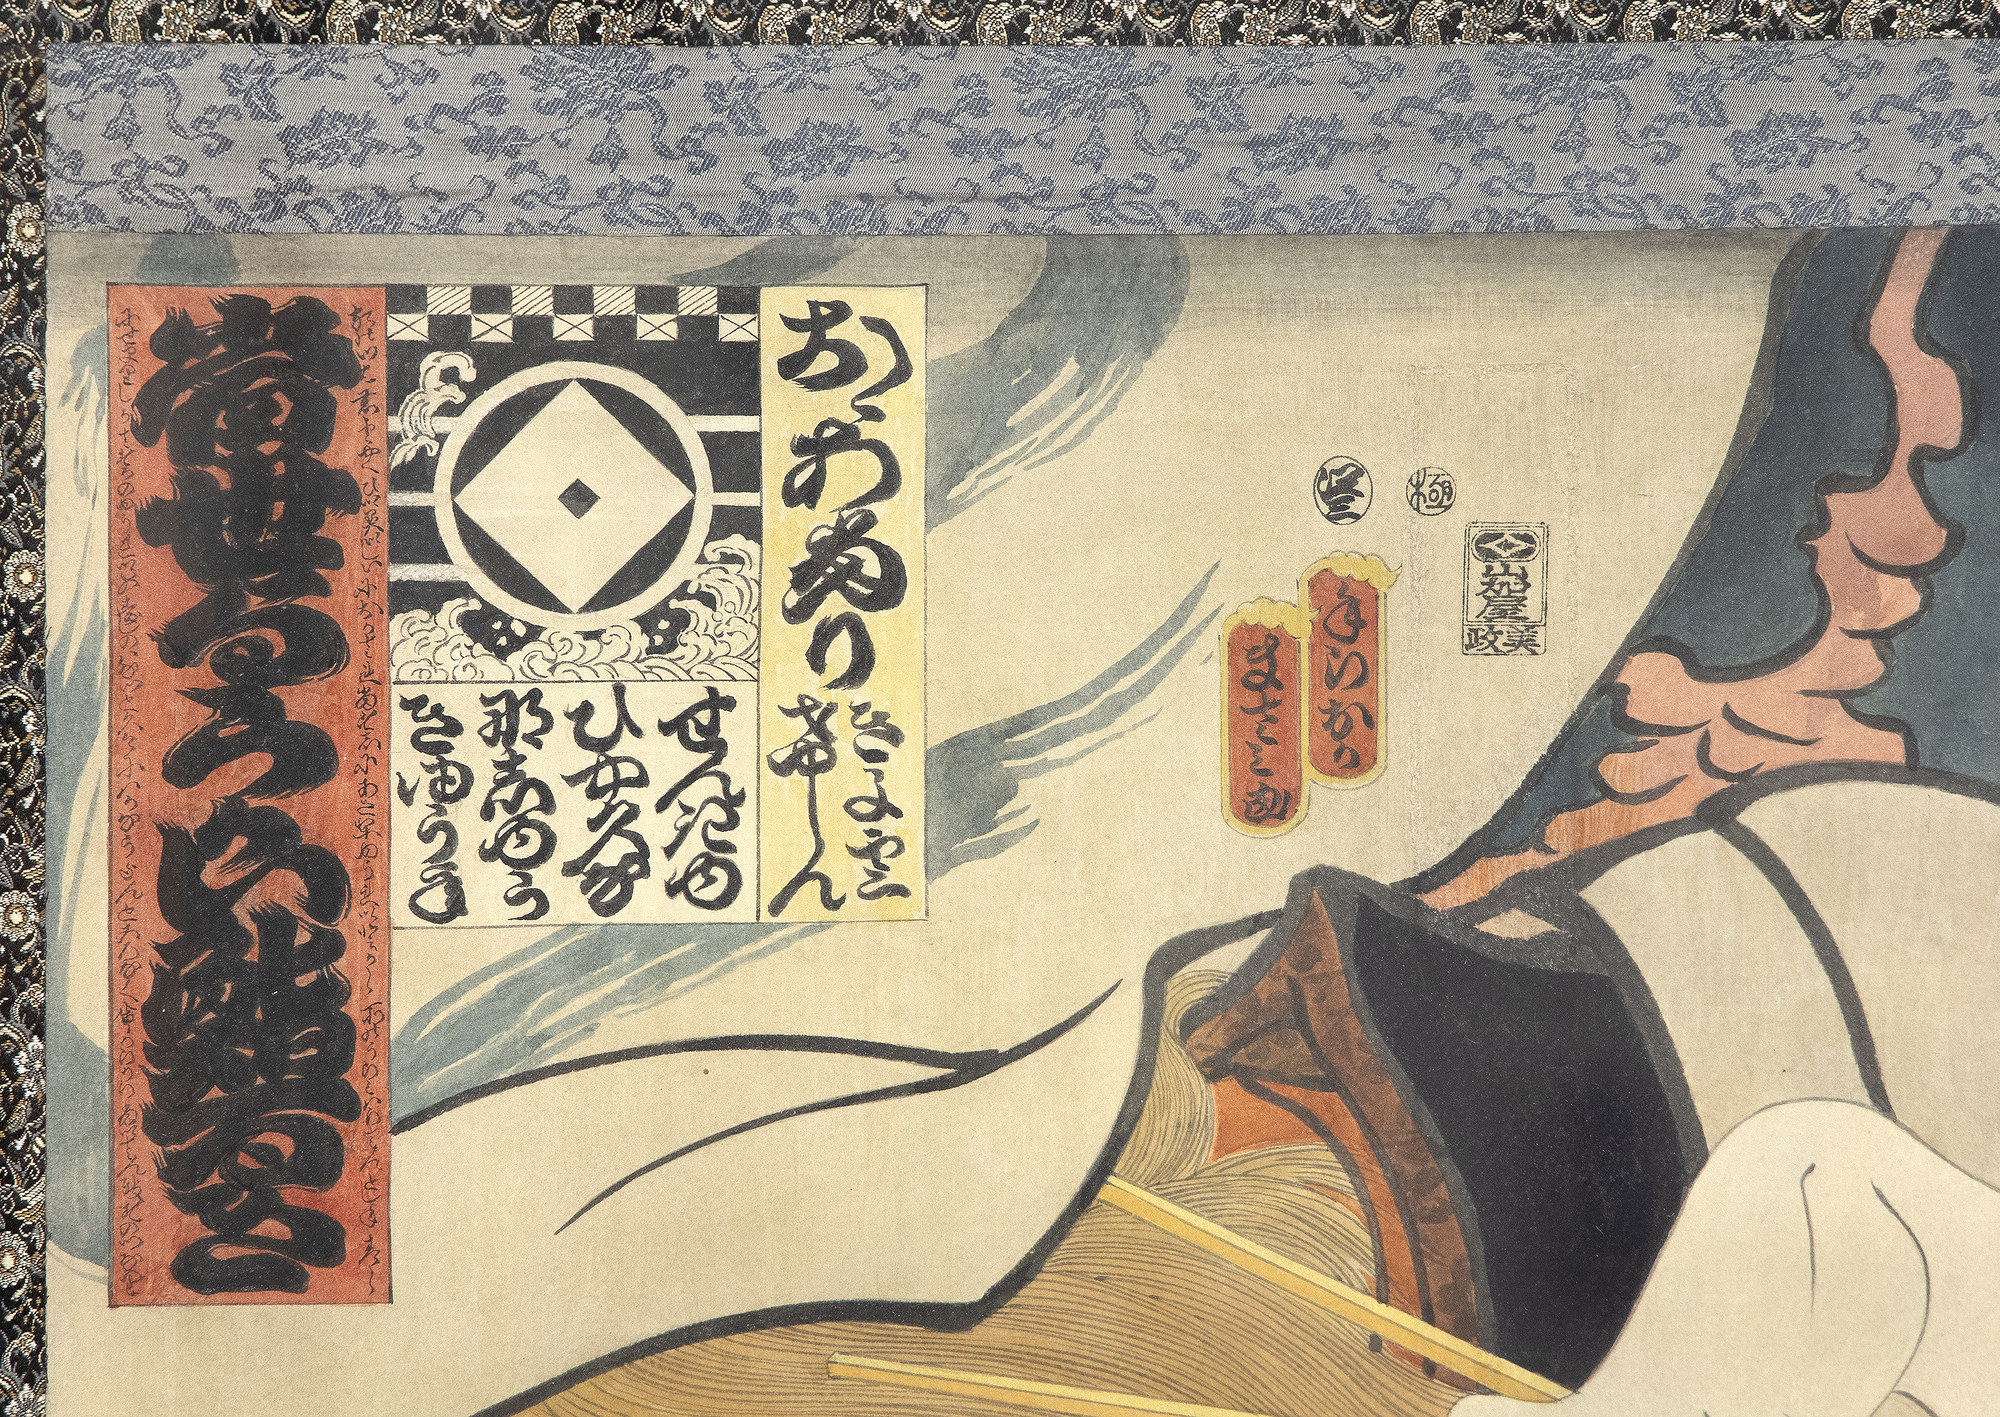 MASAMI TERAOKA - 洛杉矶寿司鬼故事/飞行寿司 - 纸上水彩画，装裱成卷轴 - 90 x 17 1/4 英寸。